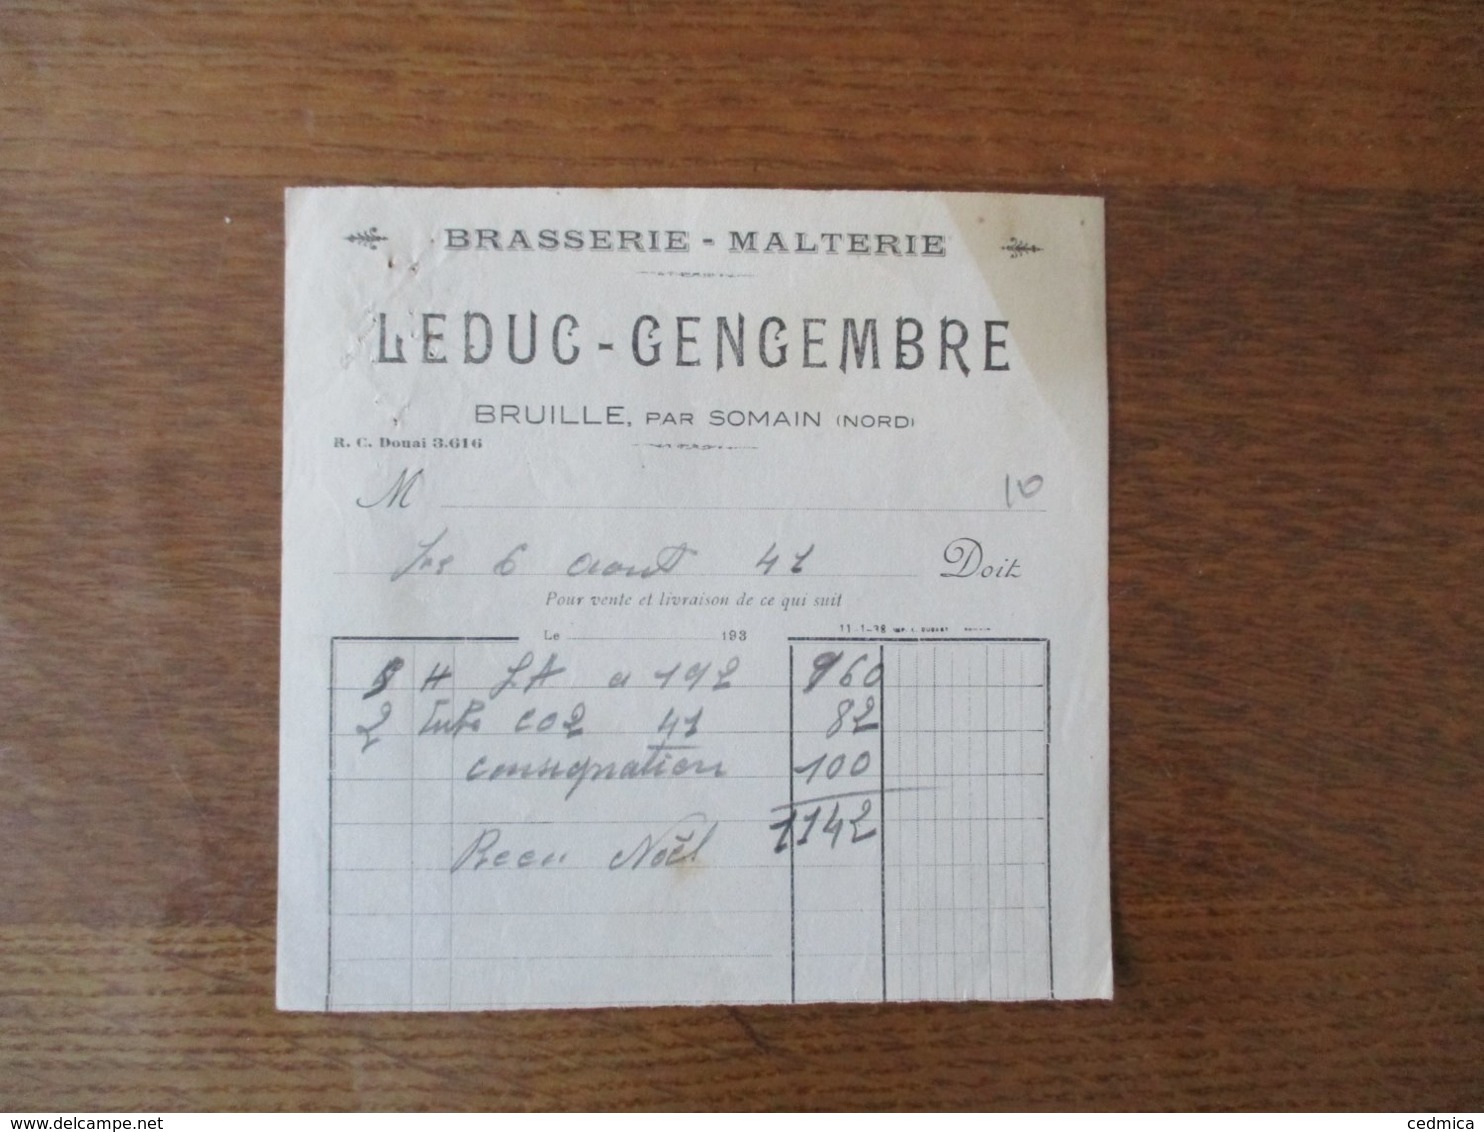 BRASSERIE-MALTERIE LEDUC-GENGEMBRE A BRUILLE PAR SOMAIN NORD FACTURE DU 6 AOUT 41 - 1900 – 1949